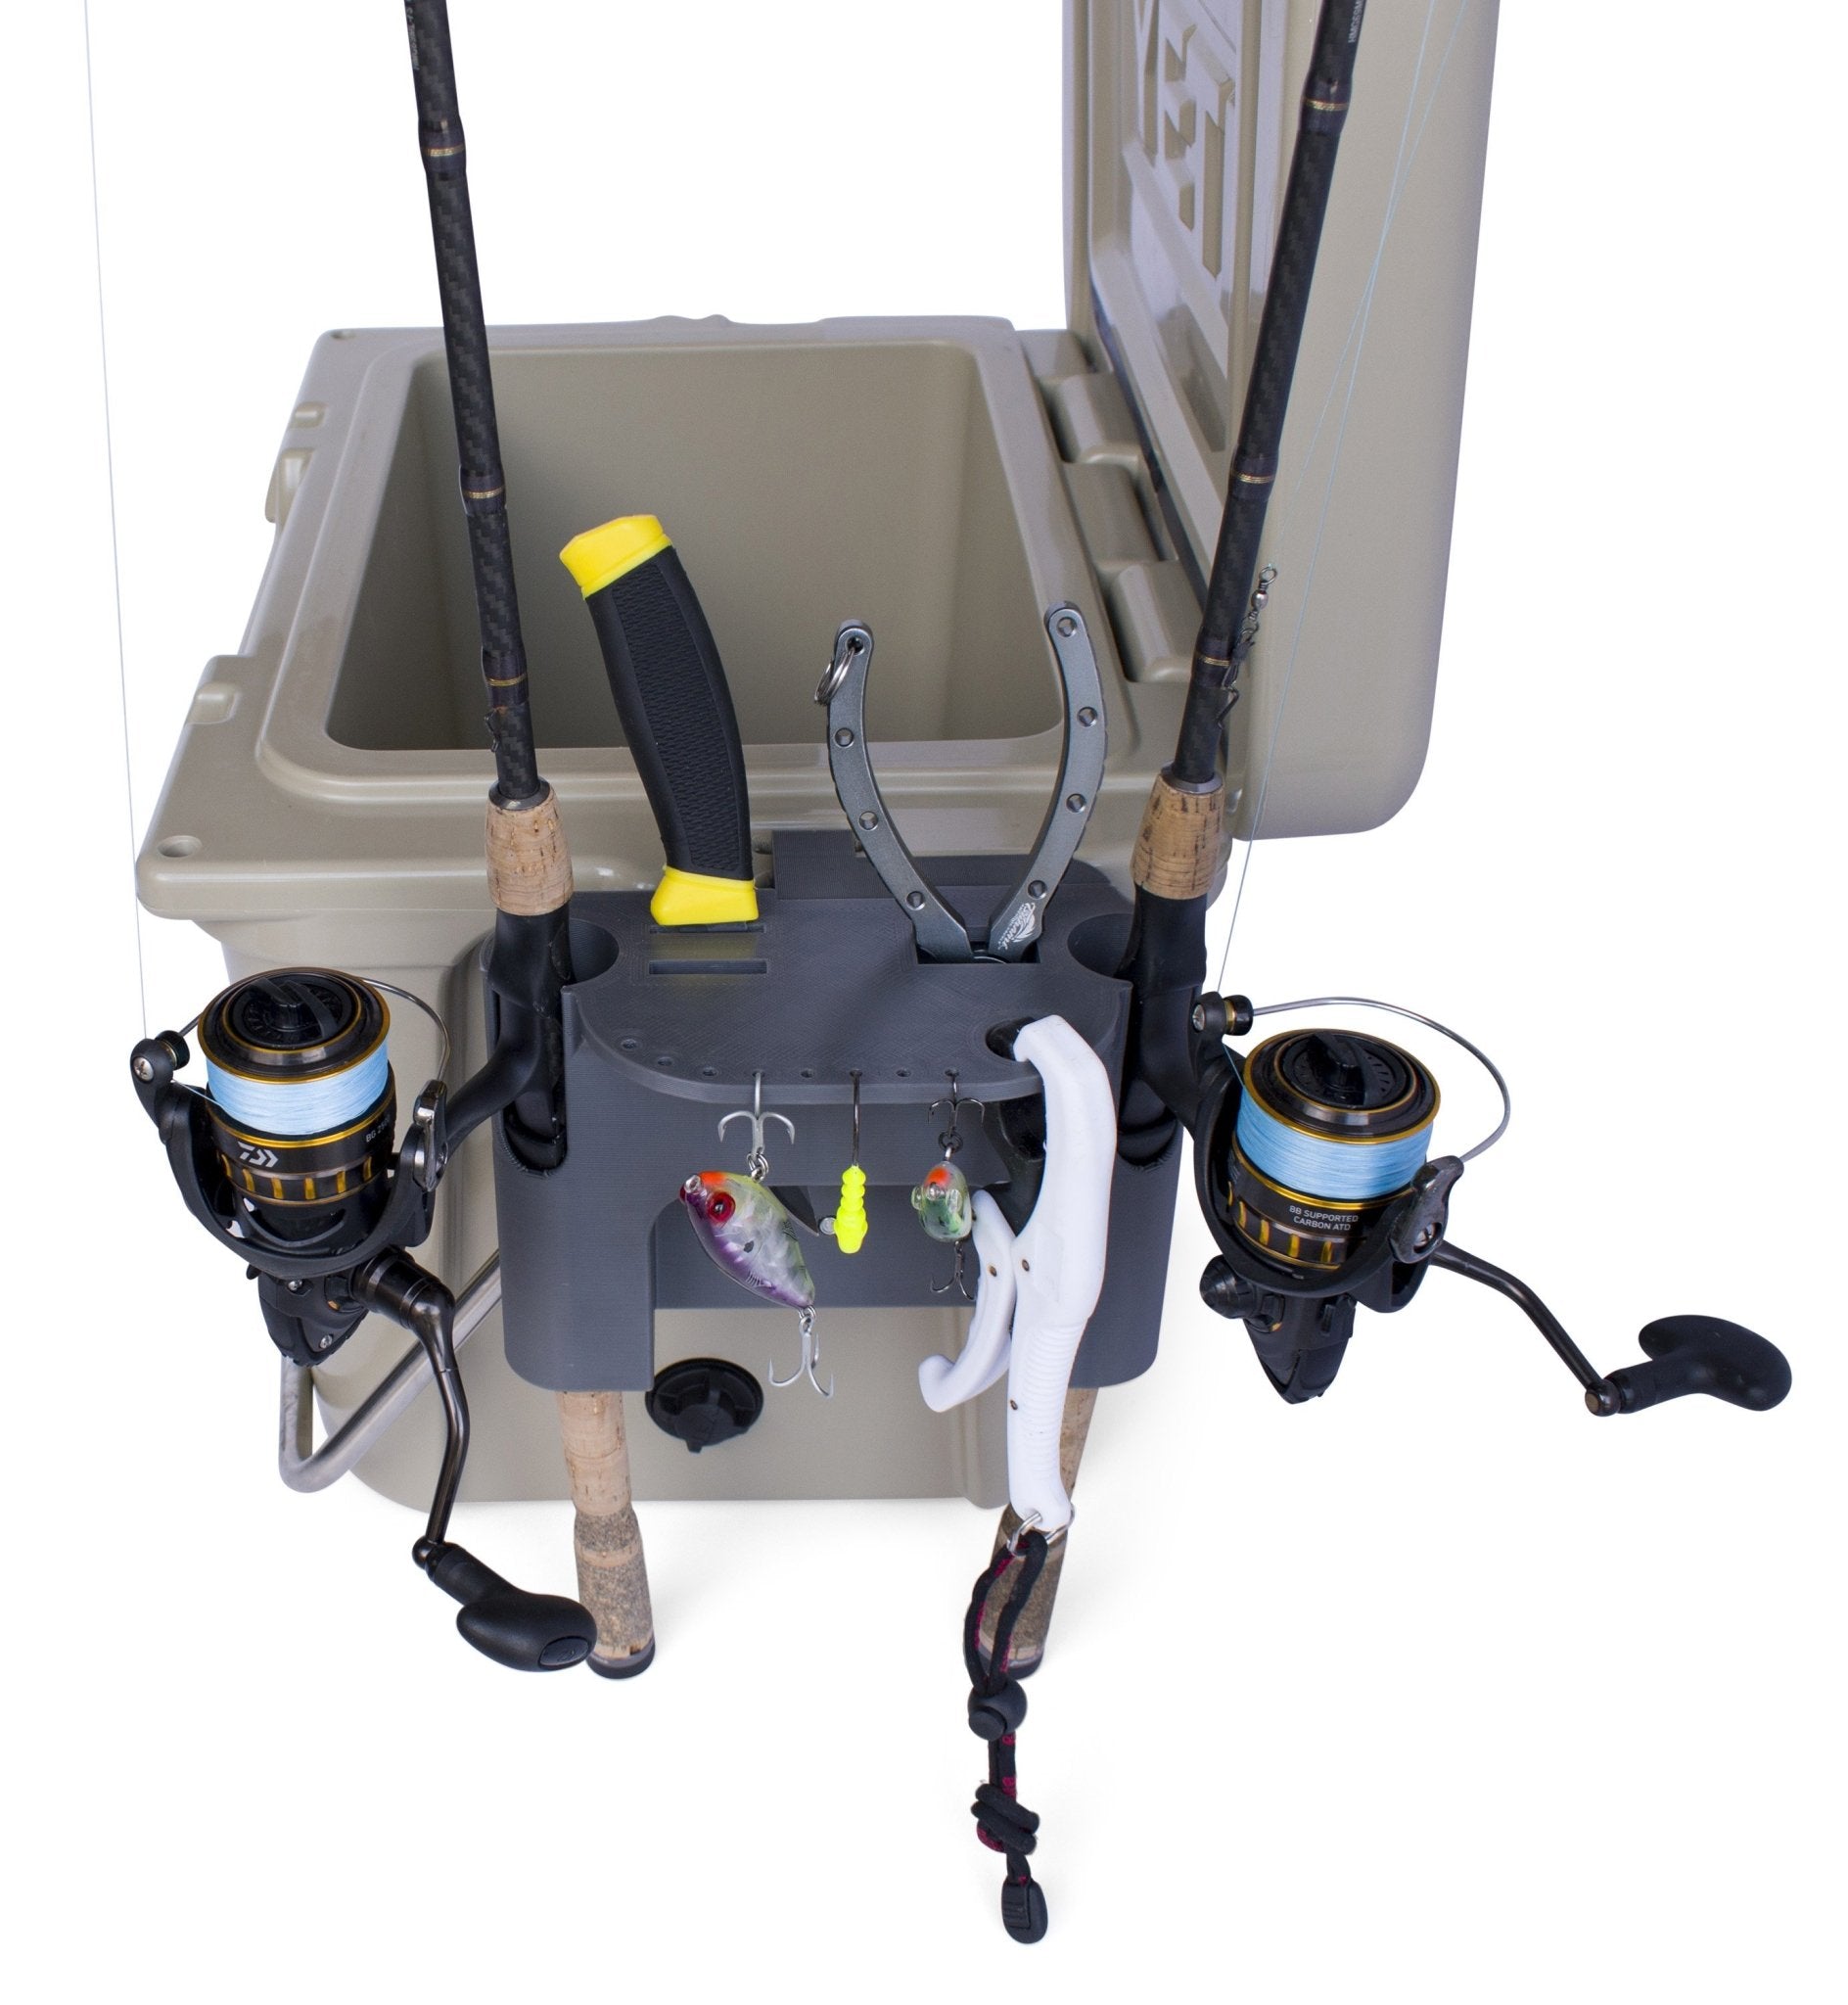 Fishing Rod Holder for Yeti Roadie Cooler – Tideline3D